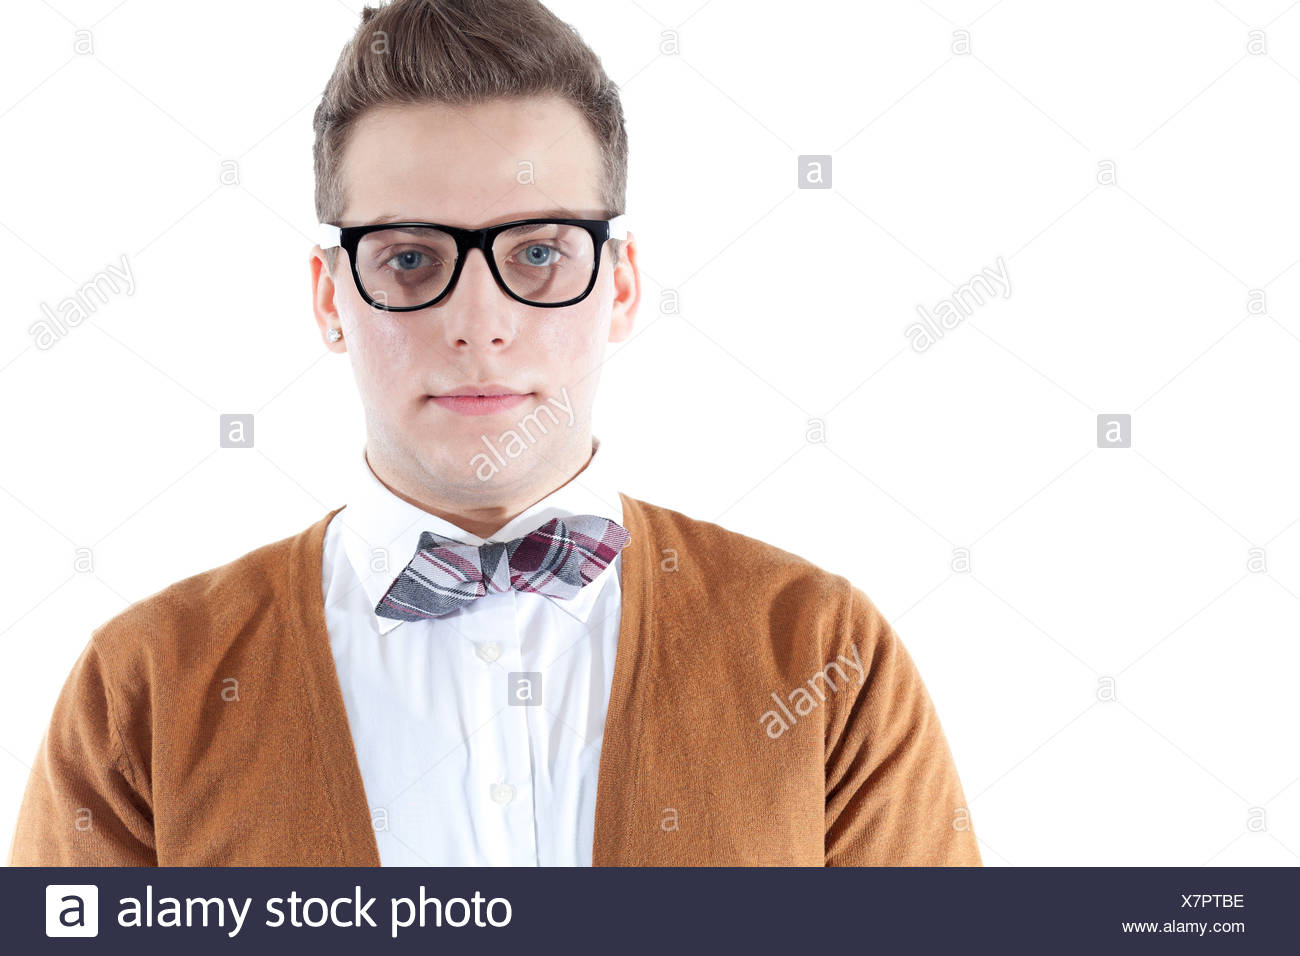 Jeune homme portant des lunettes et un noeud papillon, portrait Photo Stock  - Alamy